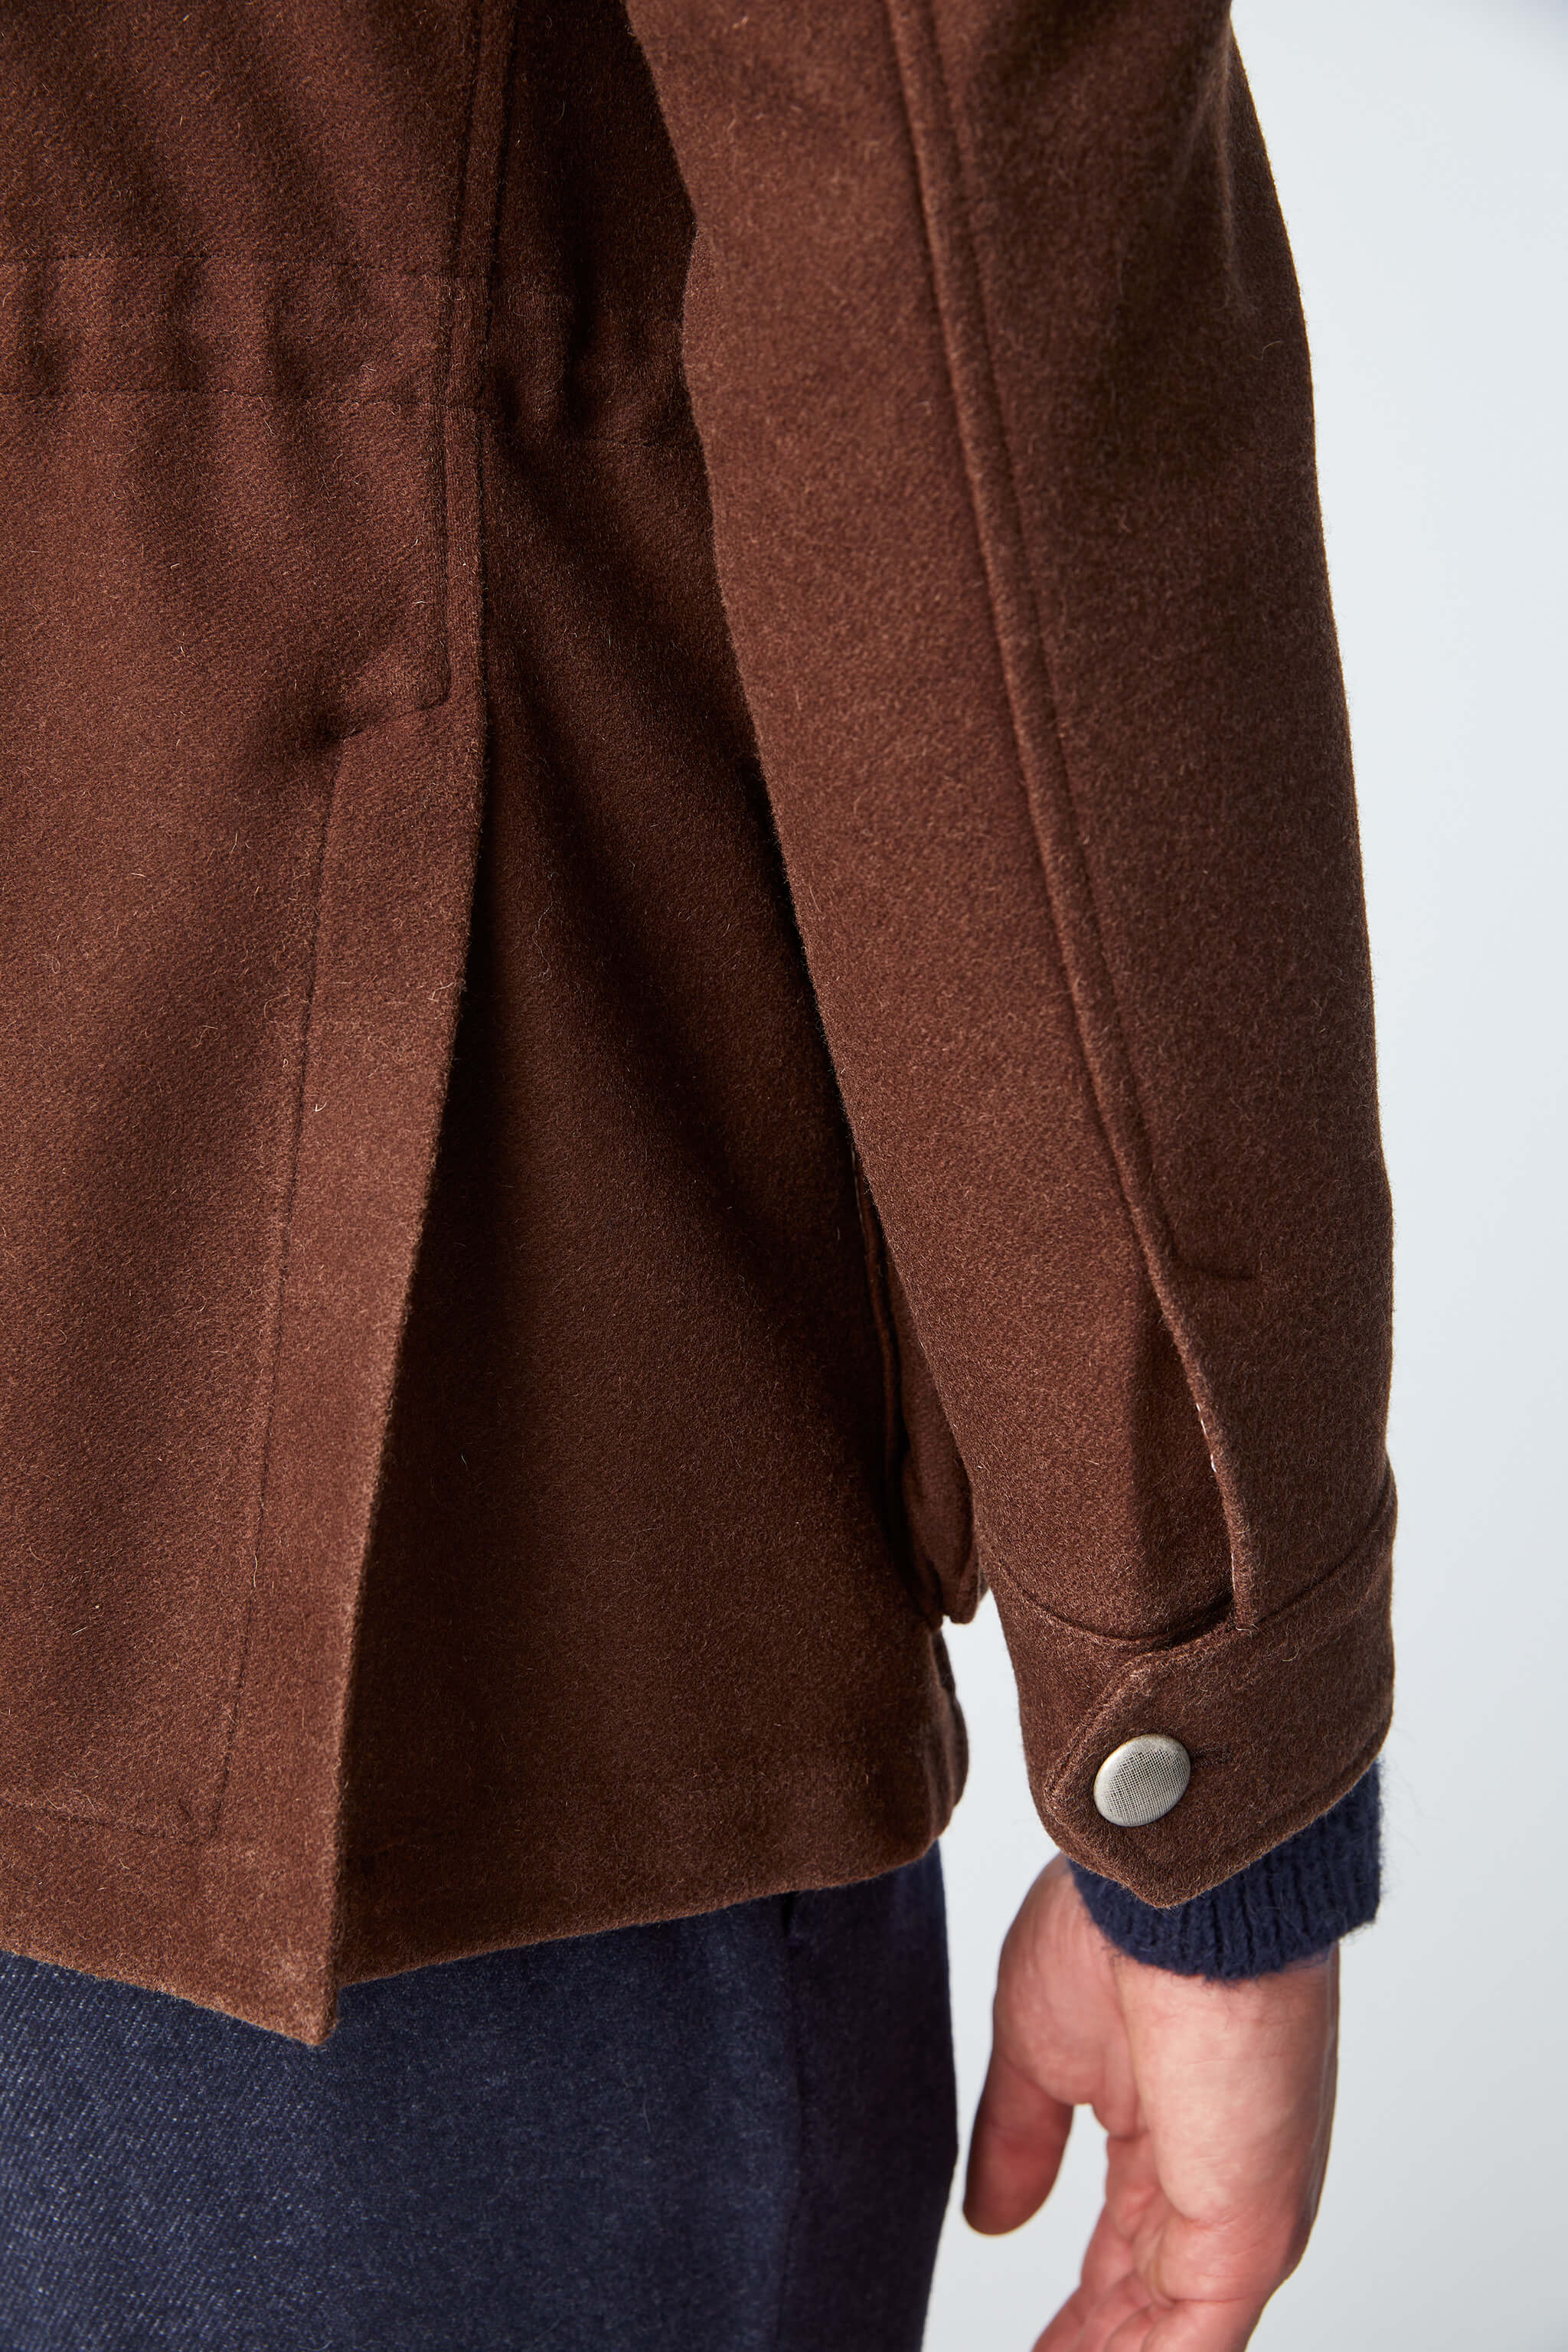 Garment-dyed SAHARA jacket in brown